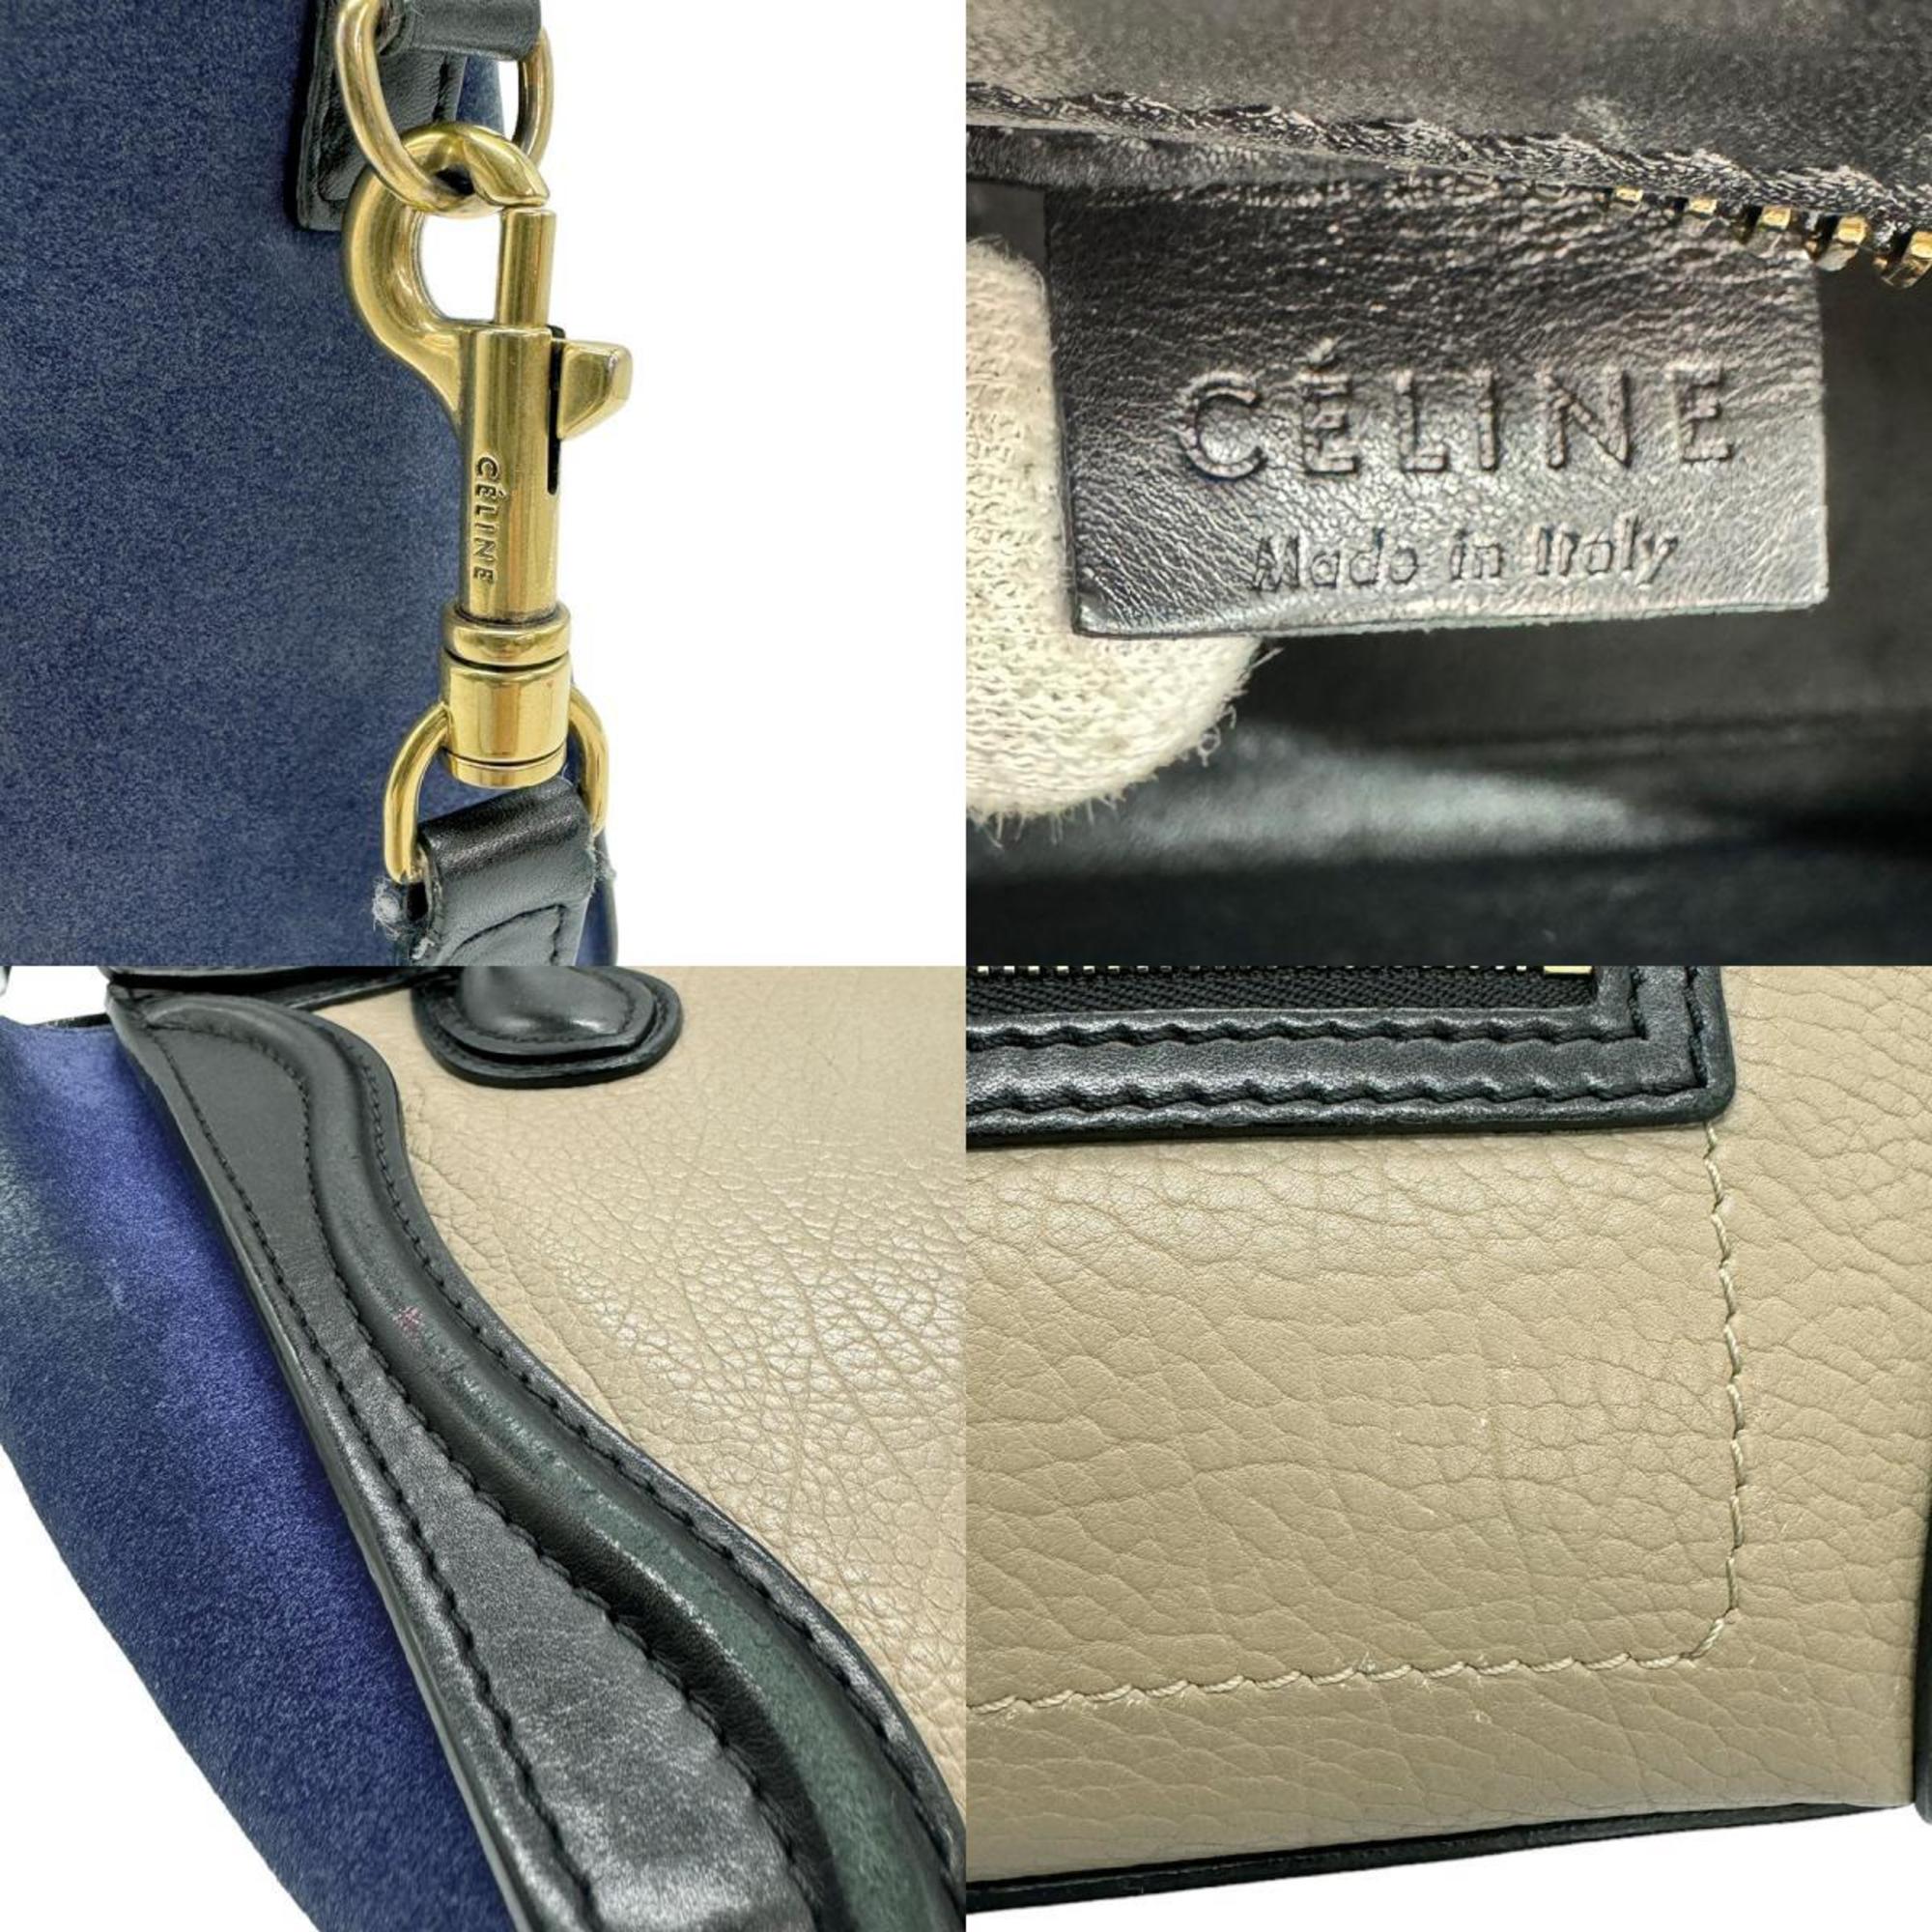 CELINE Handbag Shoulder Bag Luggage Nano Shopper Leather/Suede Beige/Black/Navy Gold Women's z0530